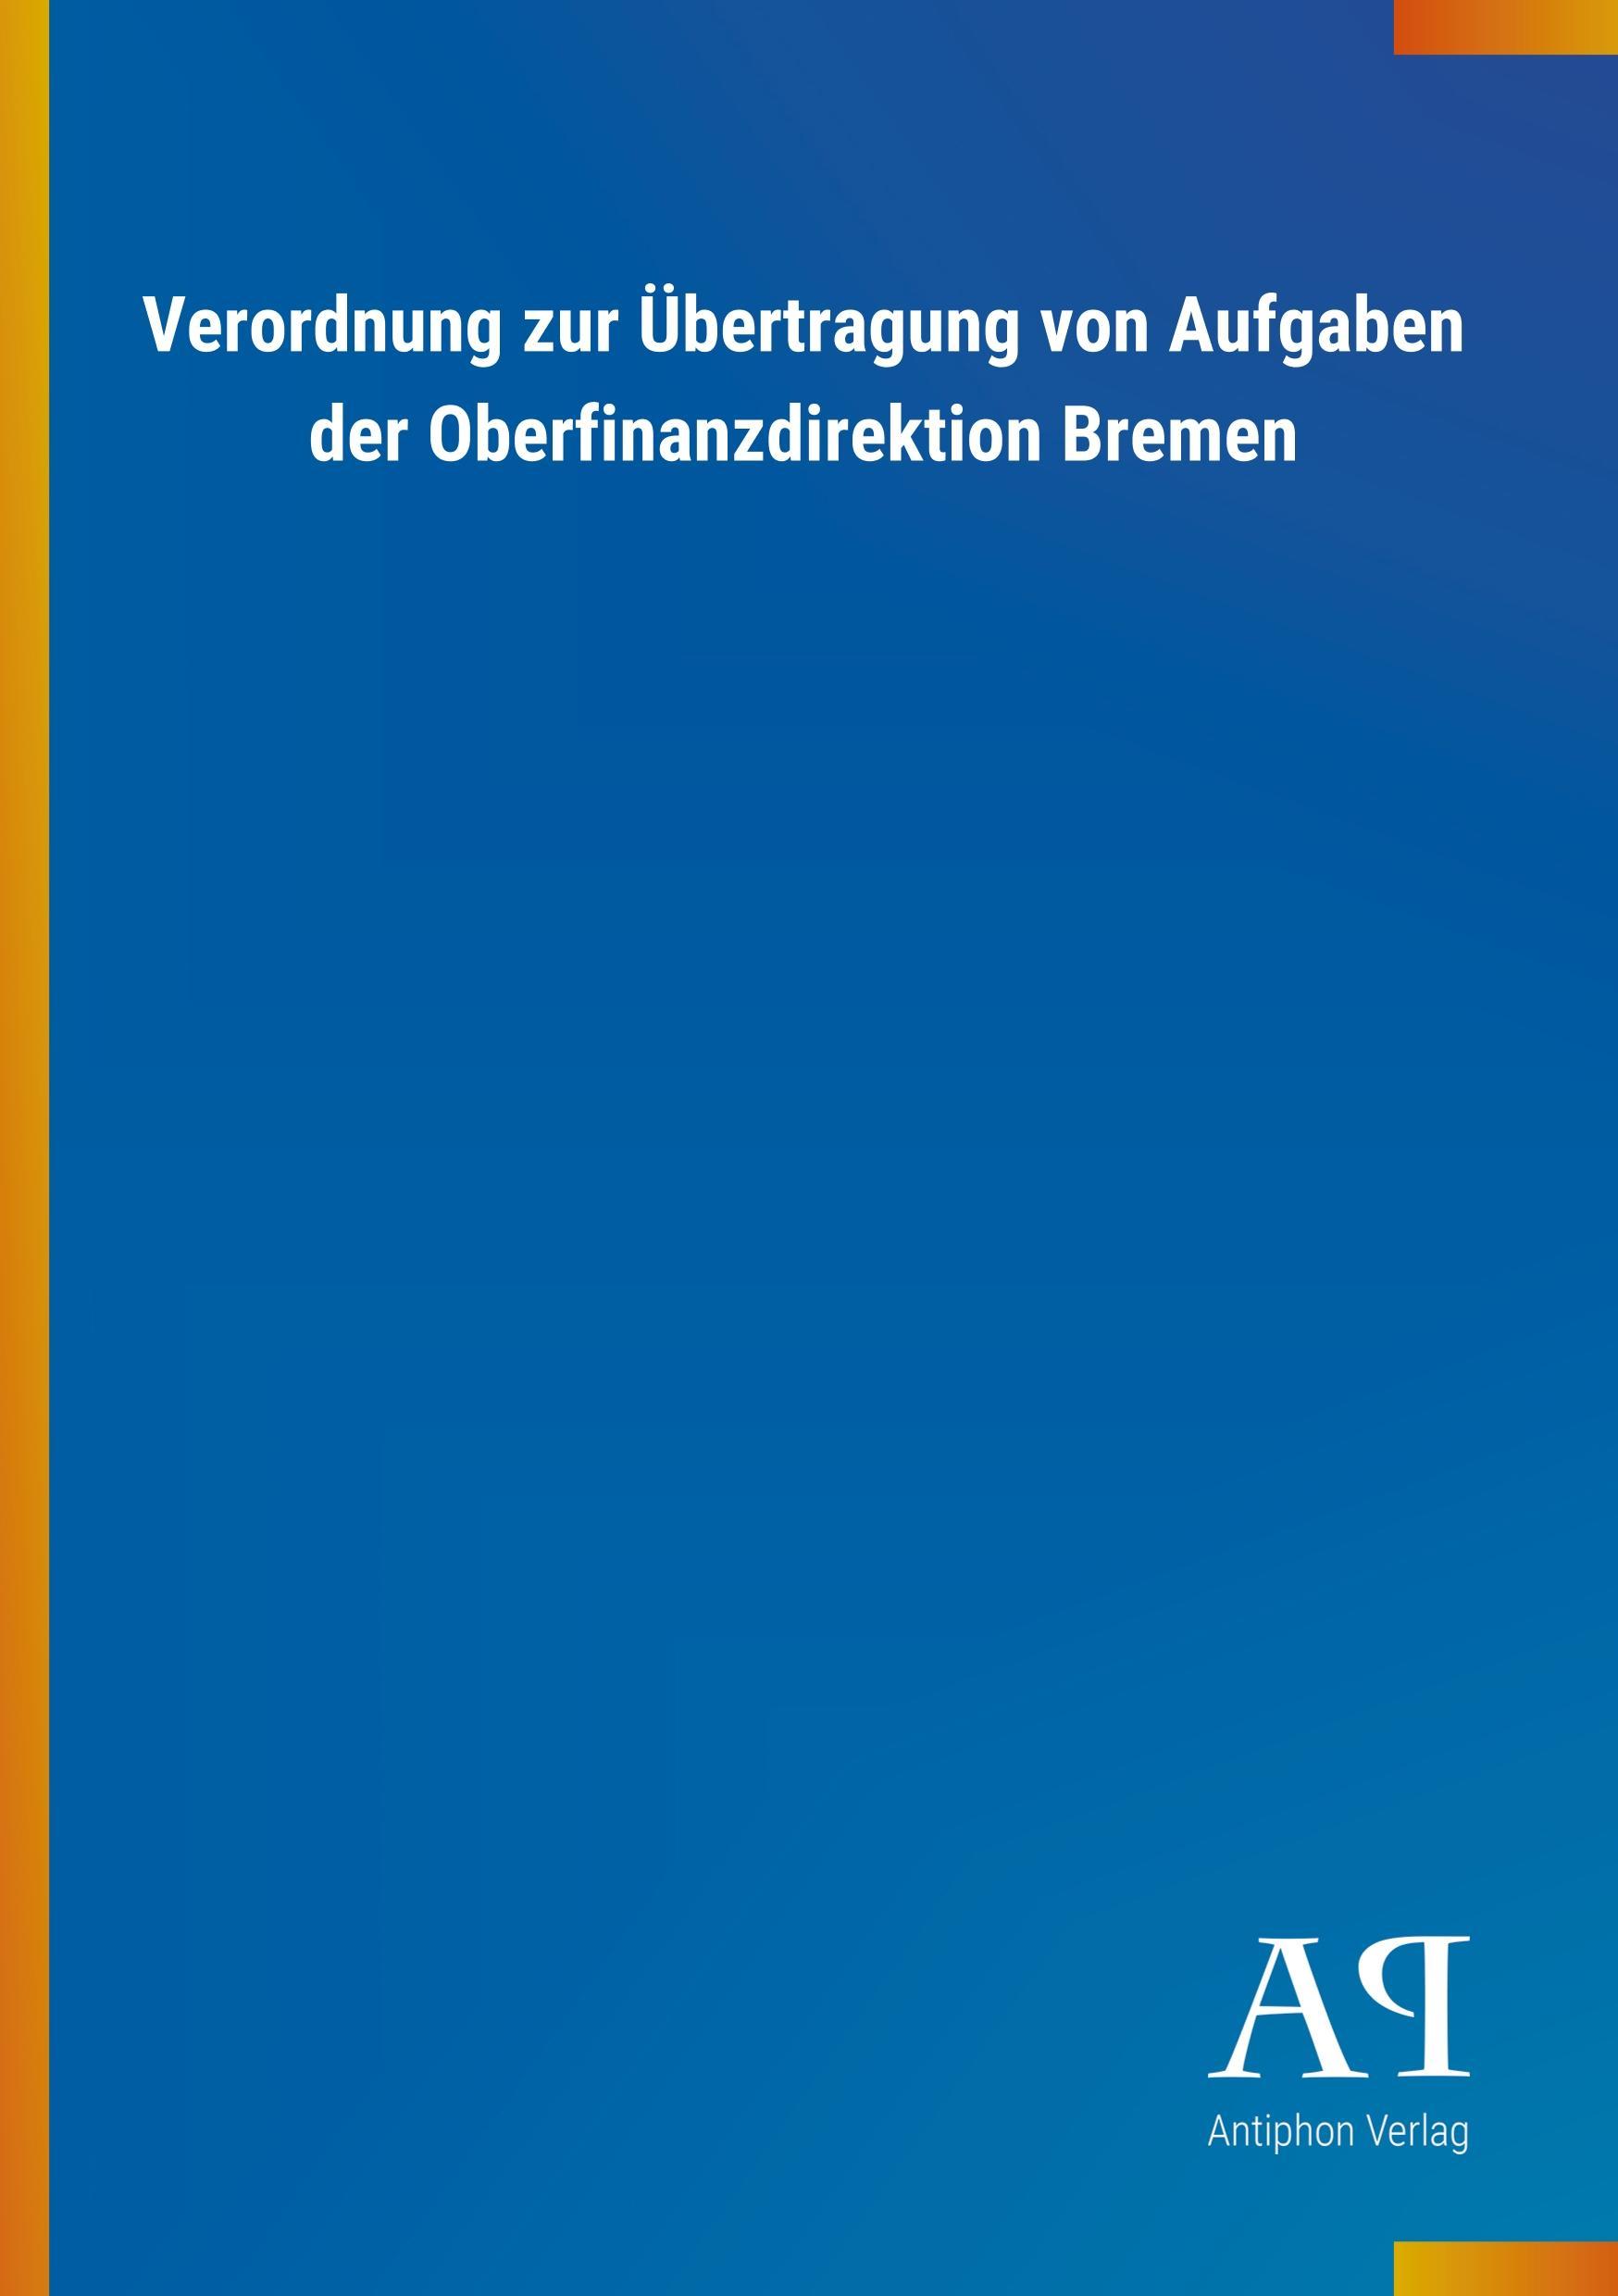 Verordnung zur Uebertragung von Aufgaben der Oberfinanzdirektion Bremen - Antiphon Verlag